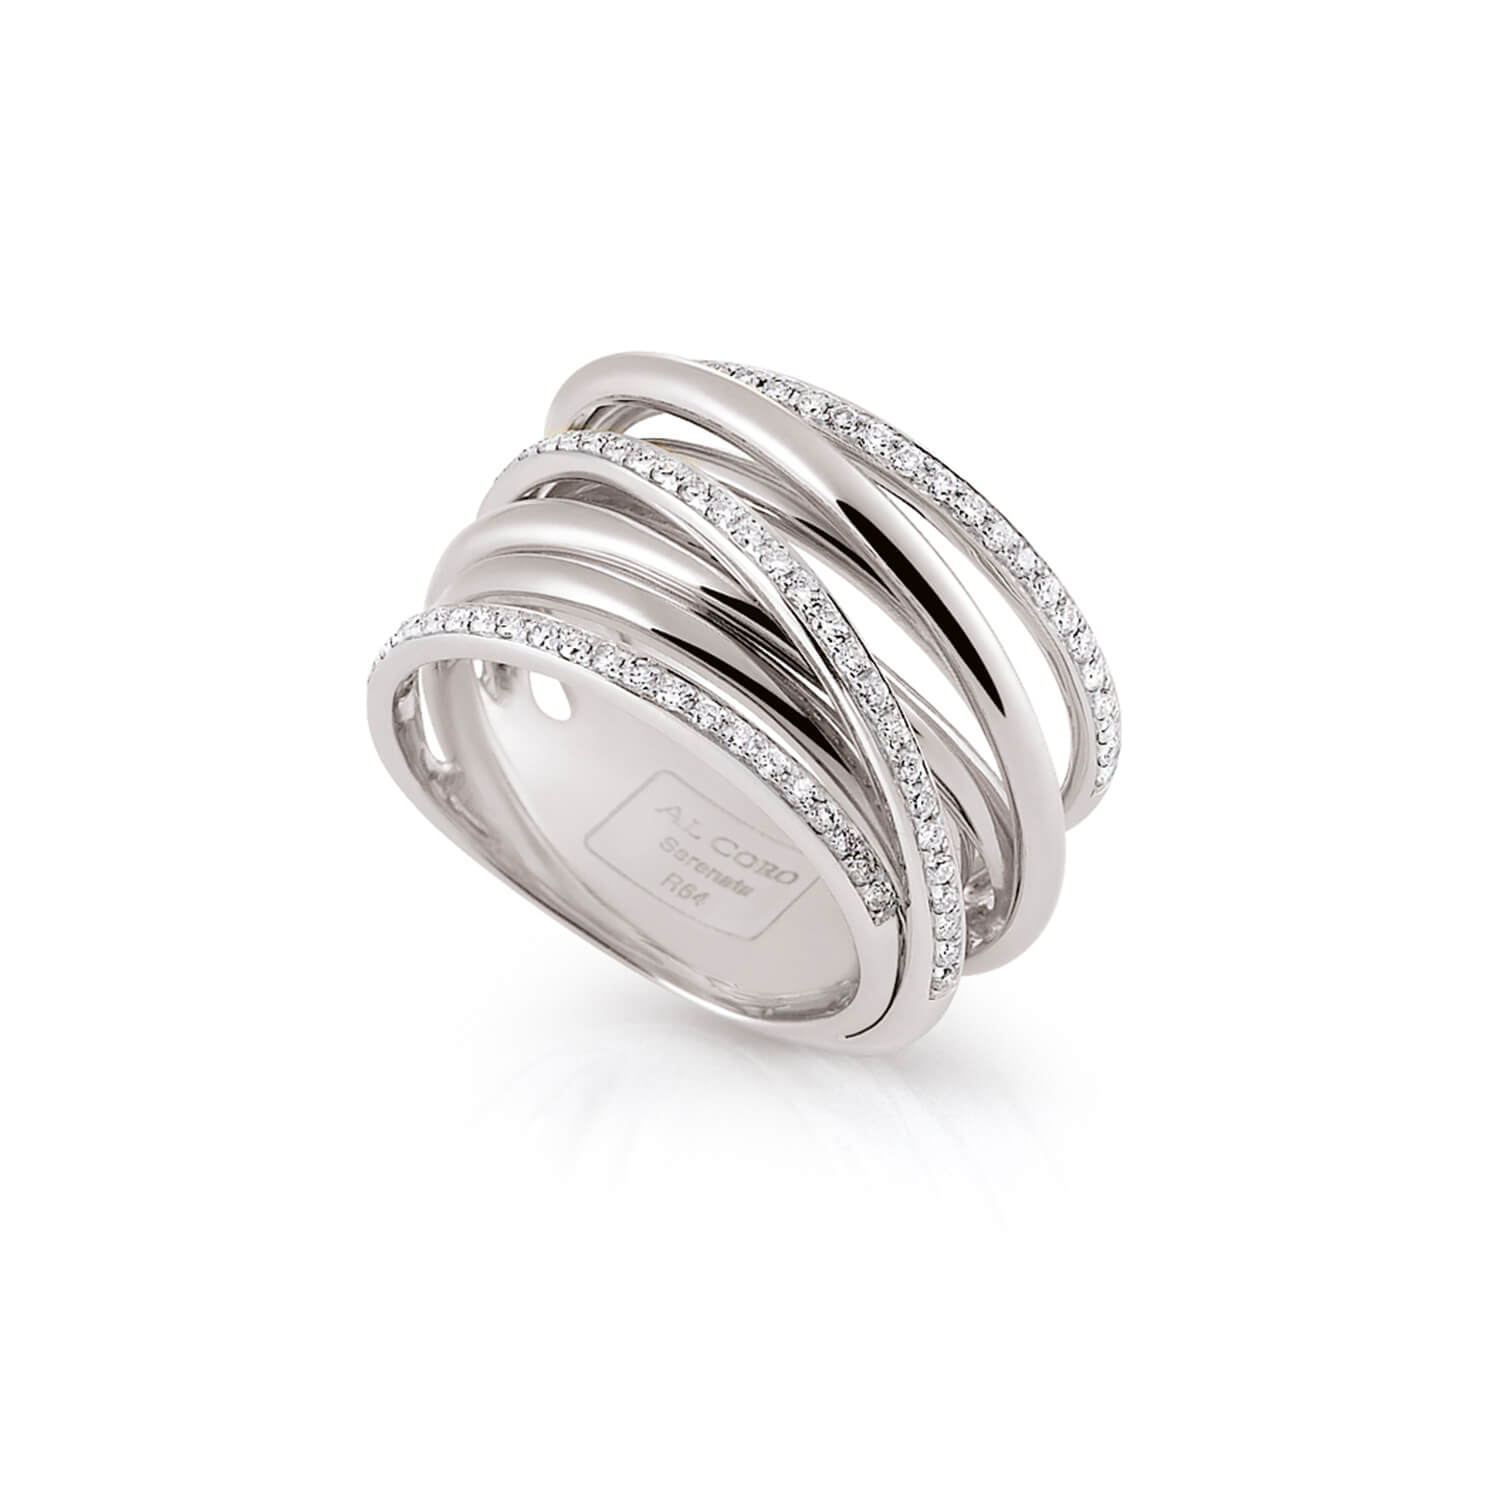 Al Coro Serenata R64 Ring in 18k White Gold with Three Diamond Bands - Orsini Jewellers NZ